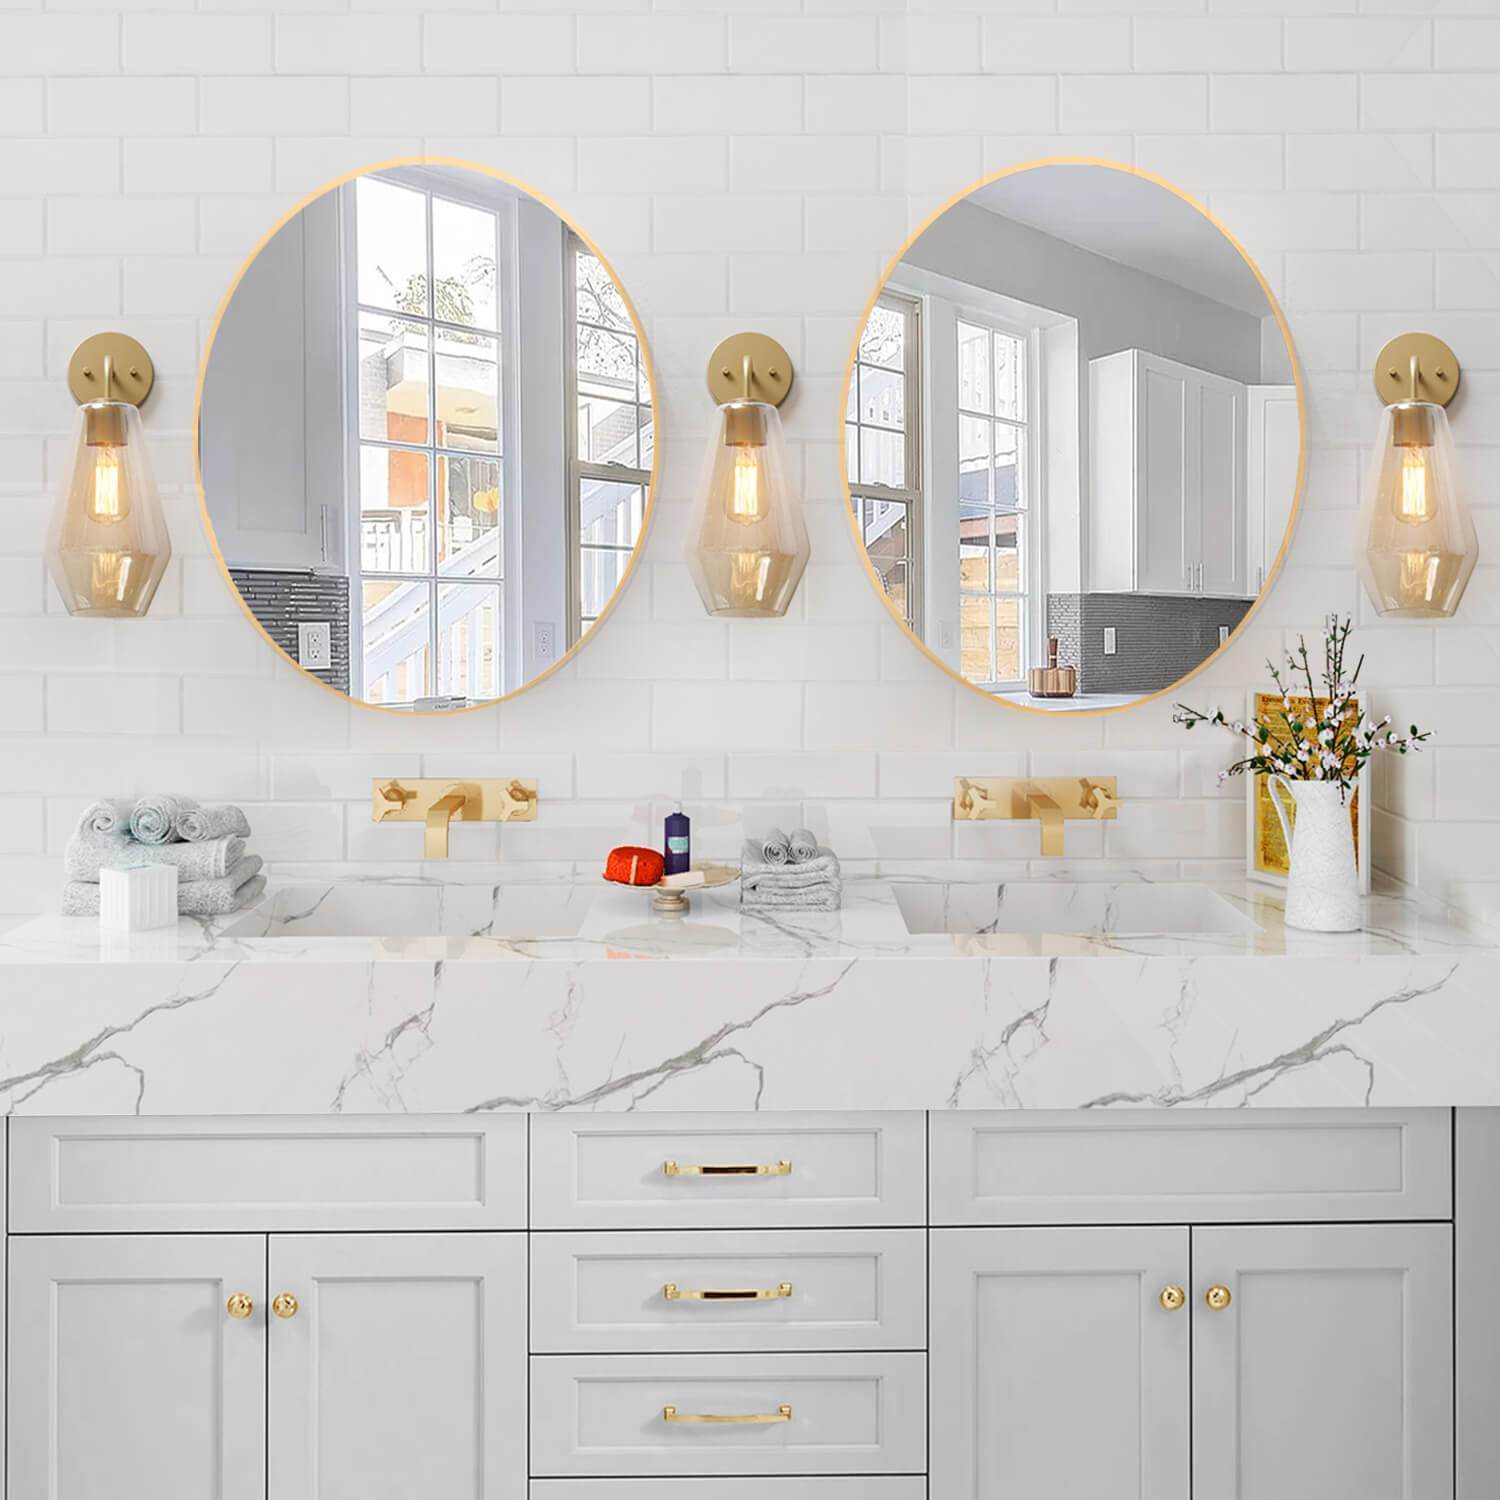 Szara łazienka ze złotymi elementami - styl i elegancja